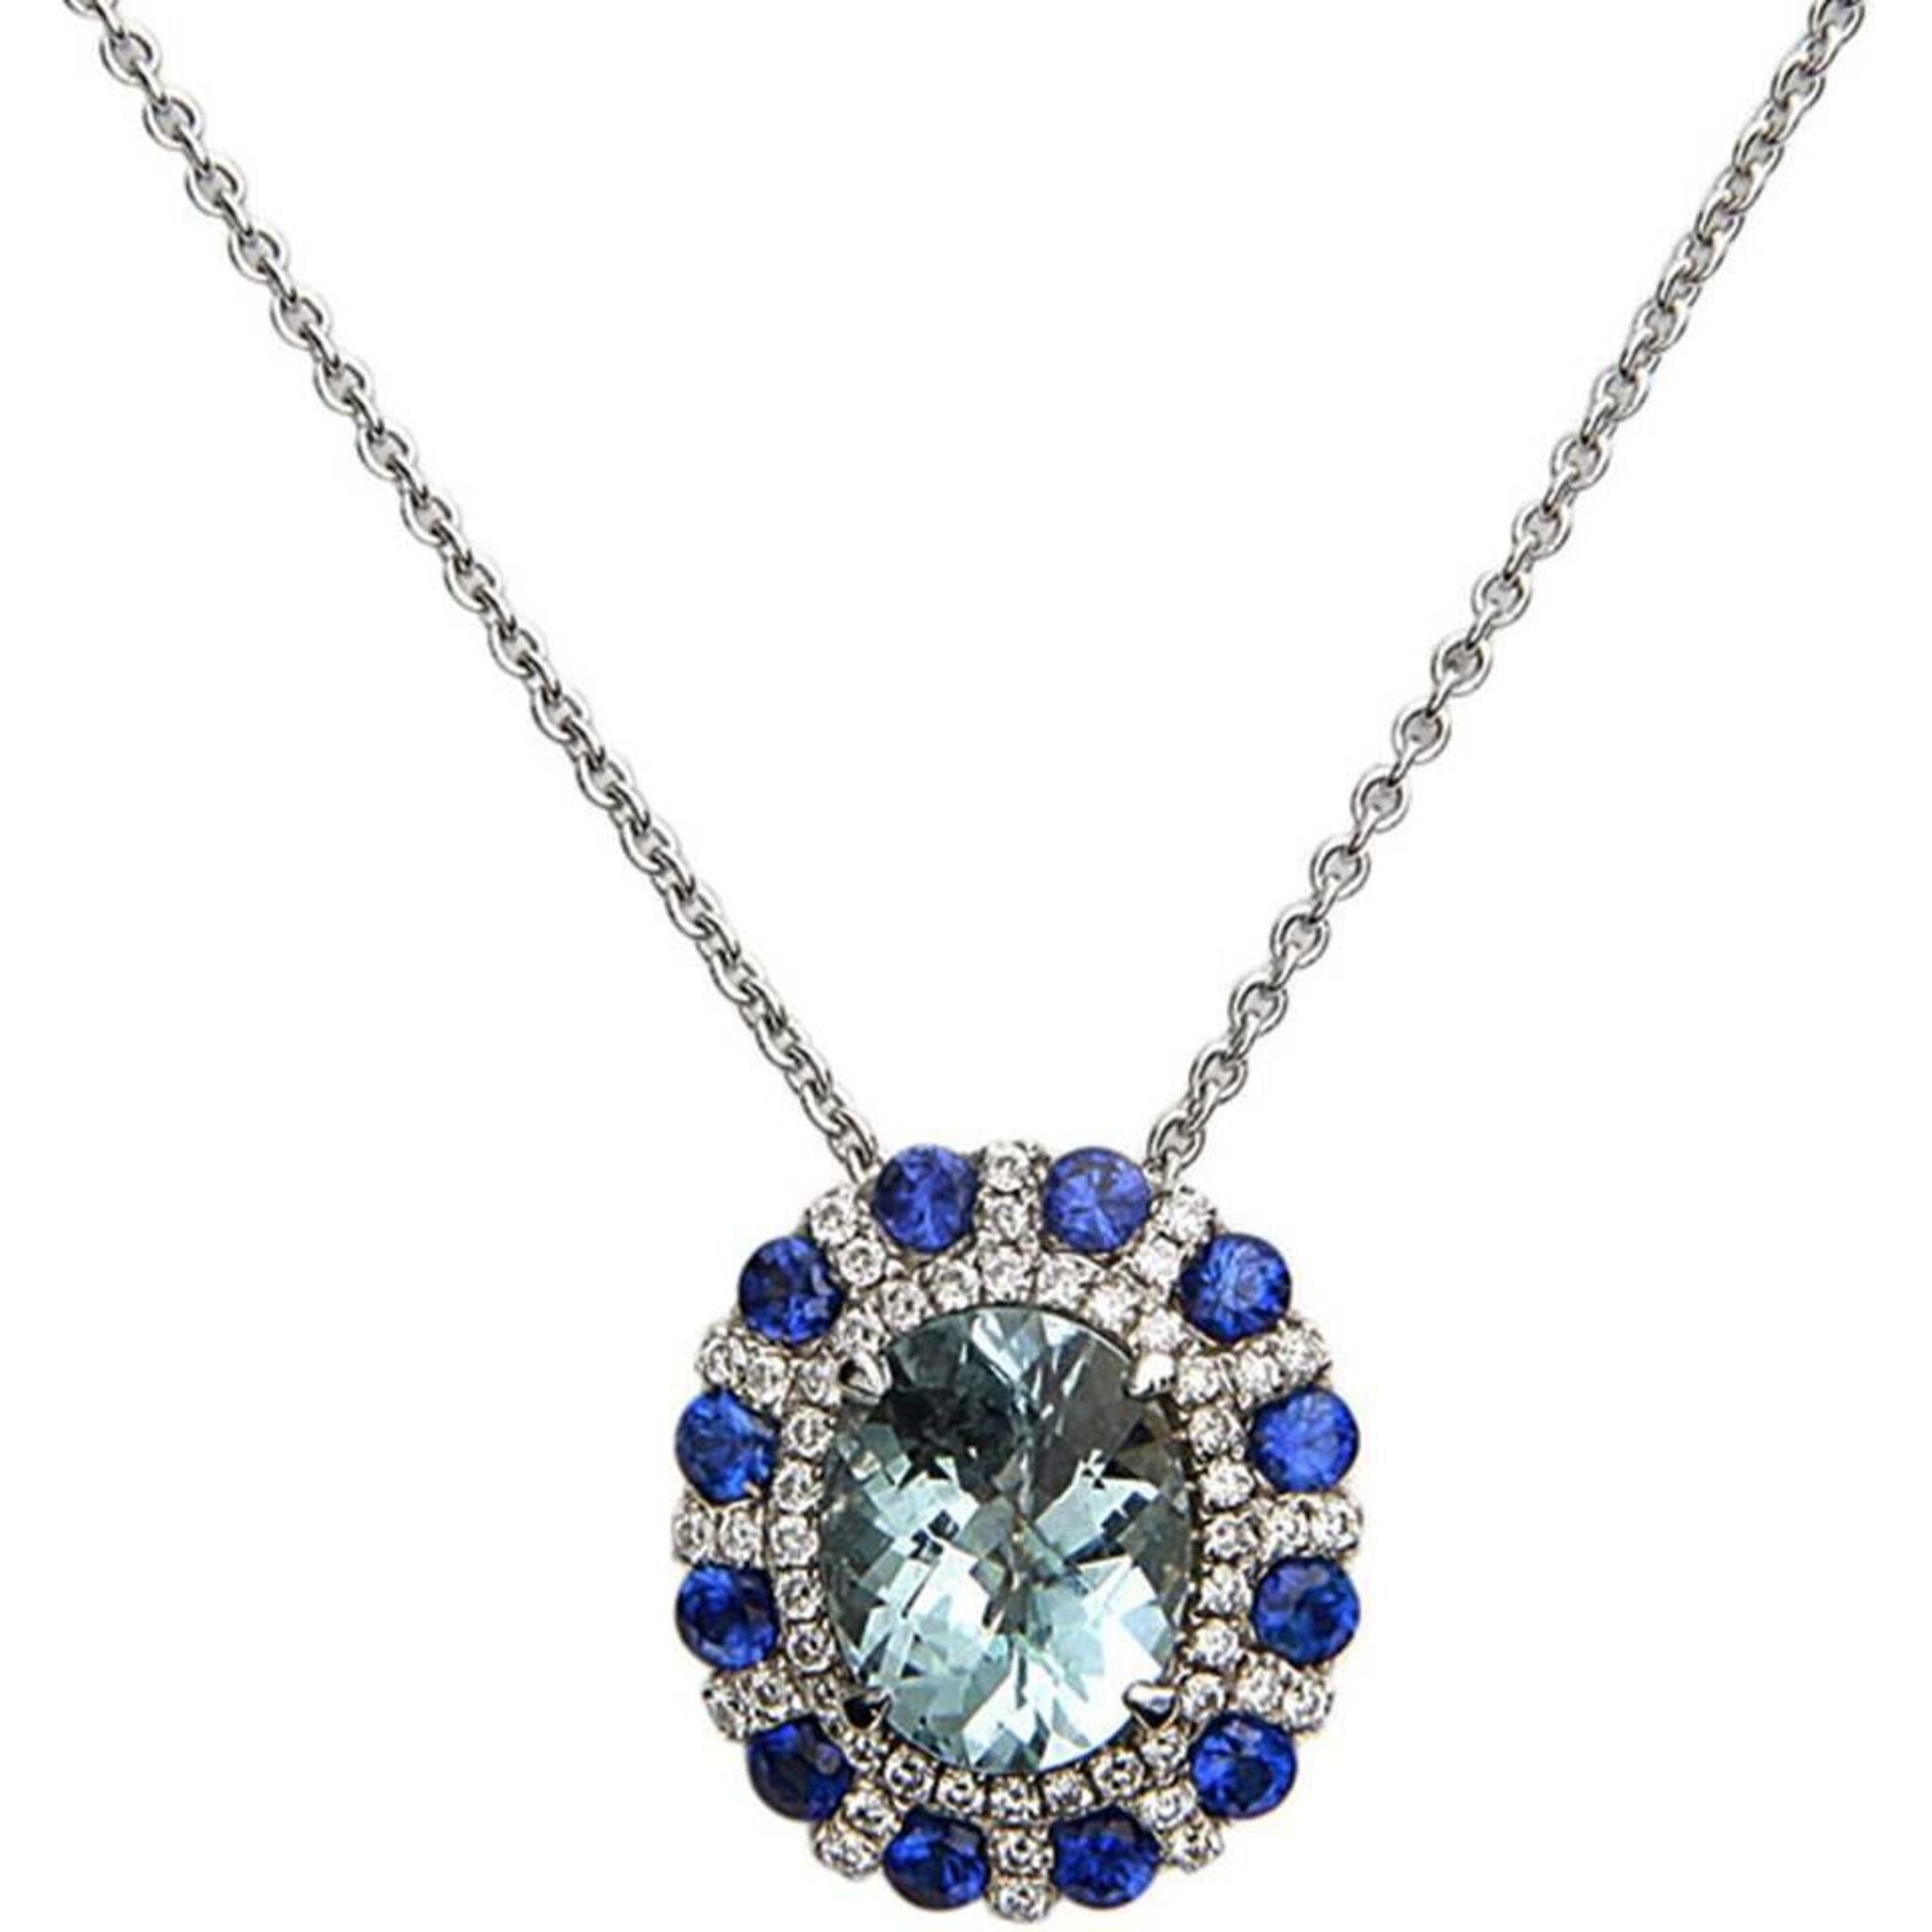 Charles Krypell - Pastel Diamond Sunburst Necklace - Aquamarine